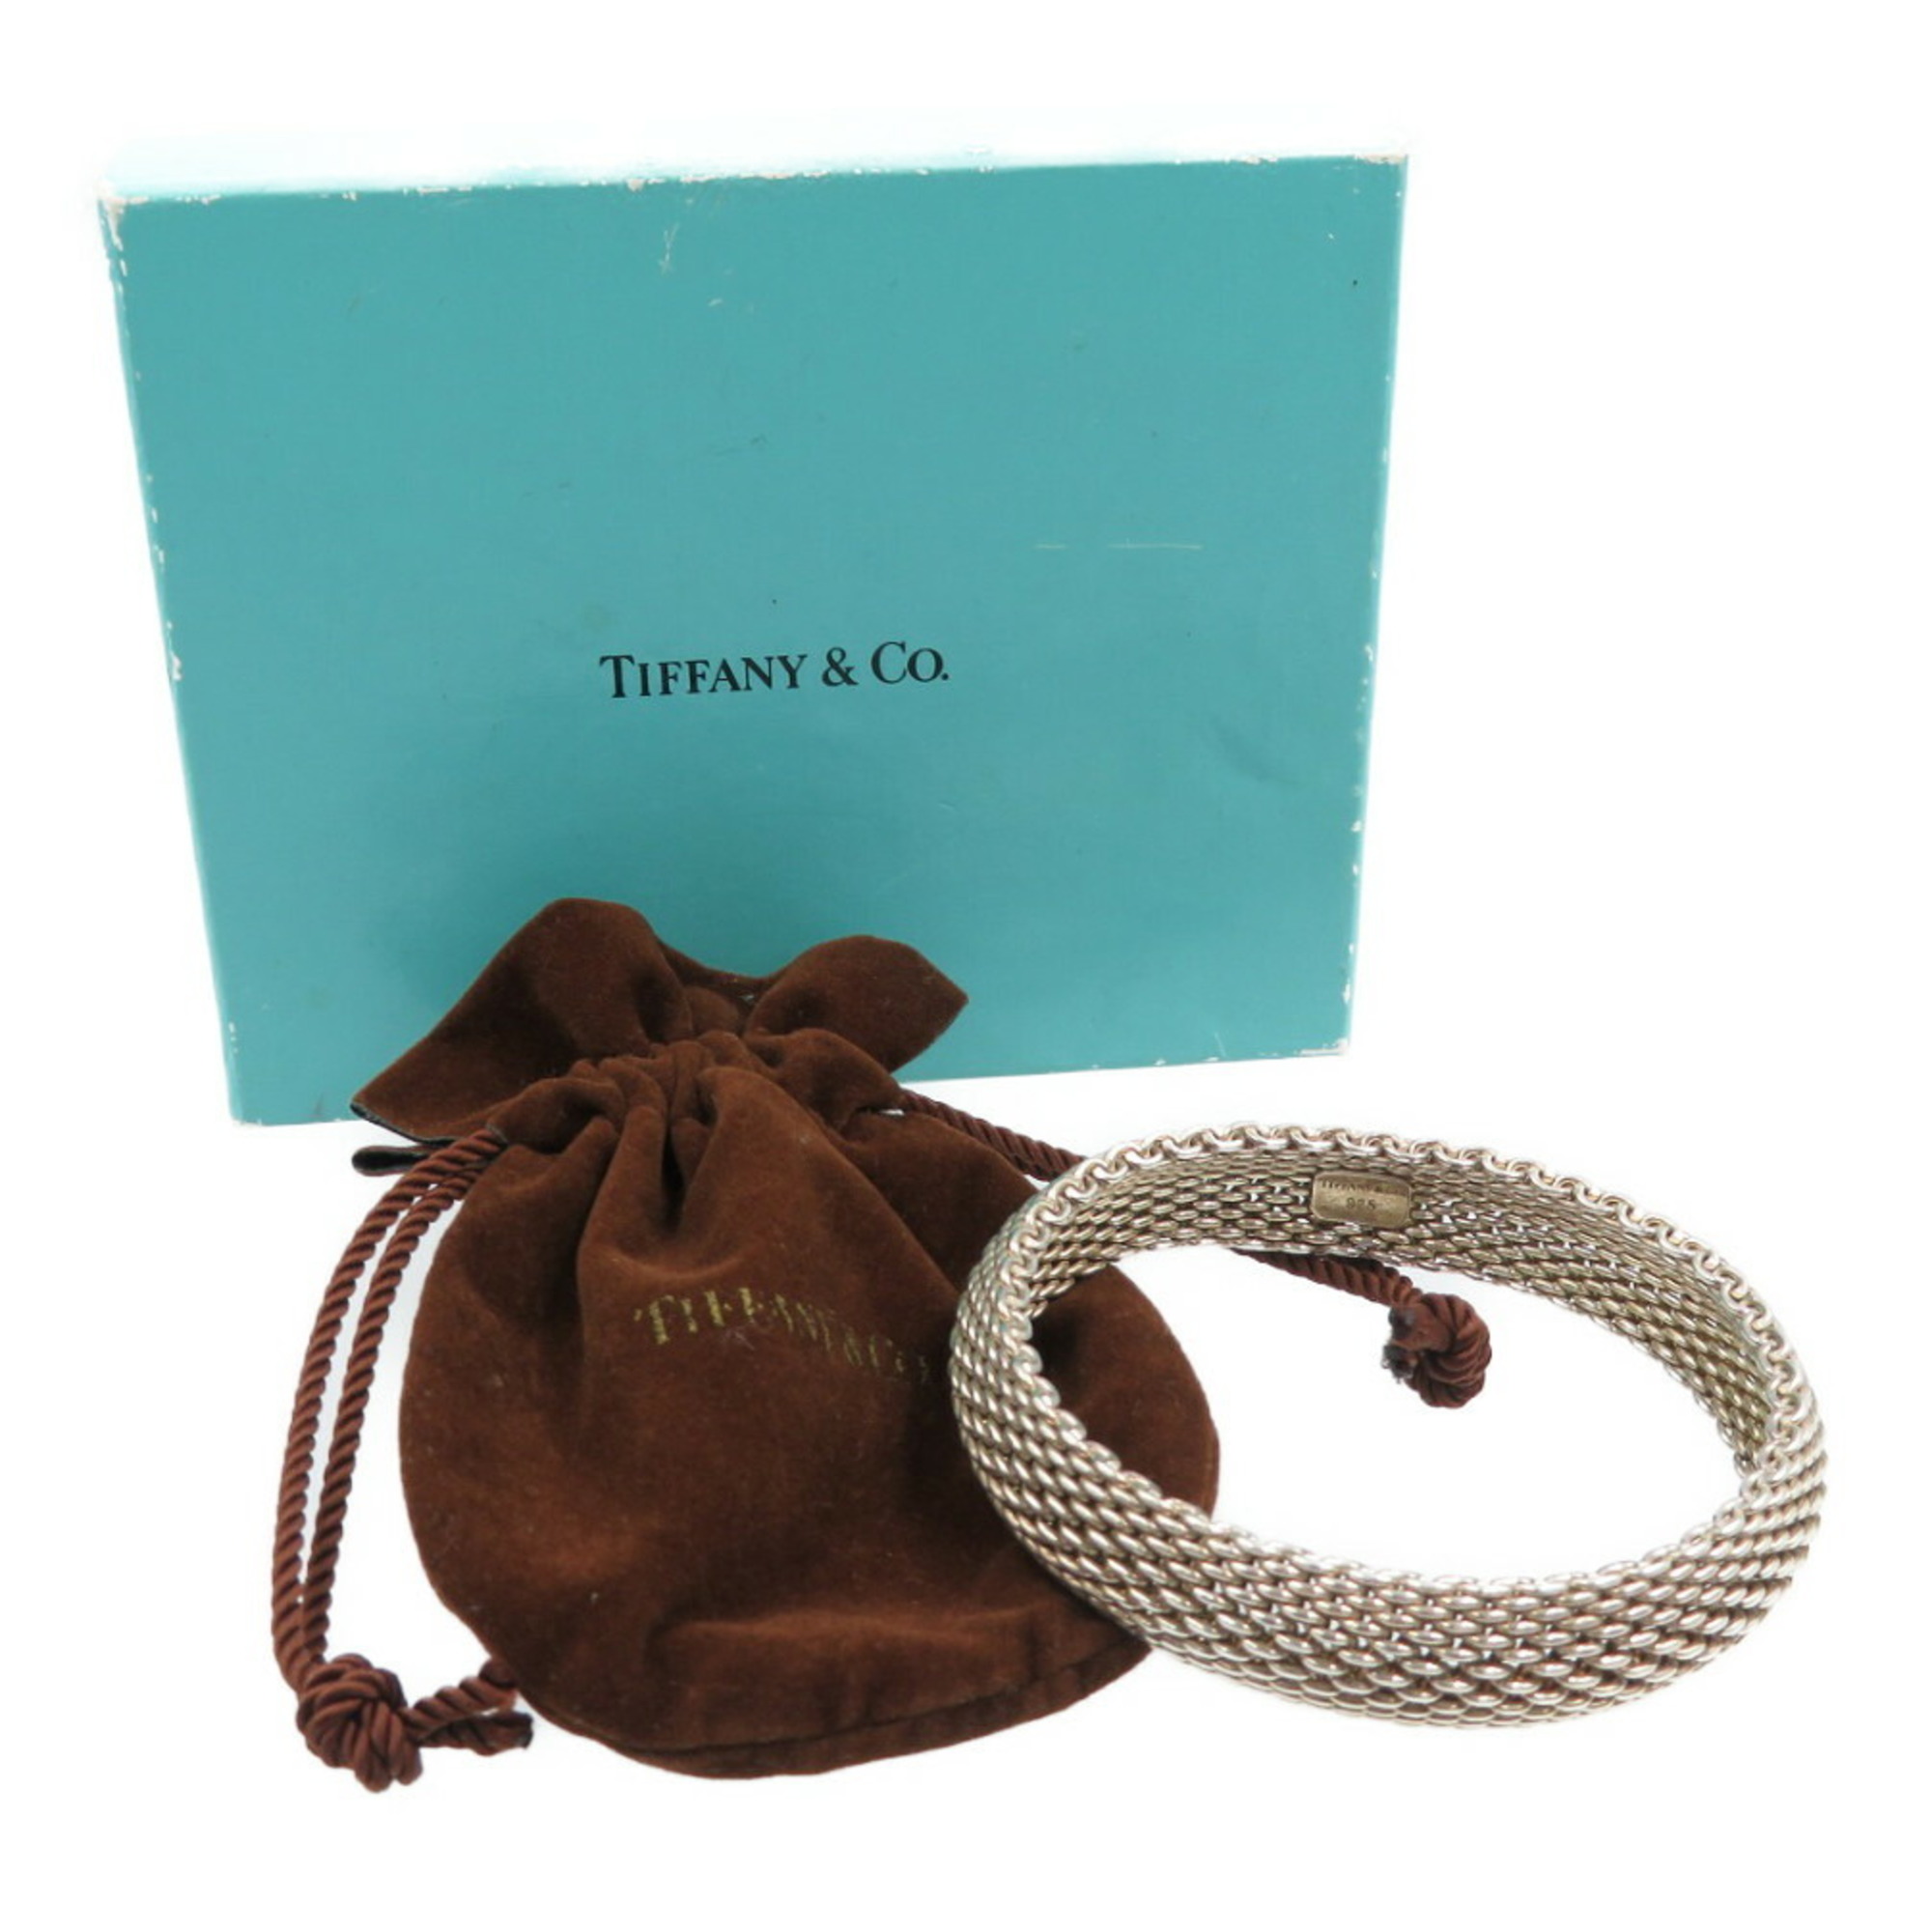 Tiffany Somerset Silver 925 Bangle 0016TIFFANY&Co.